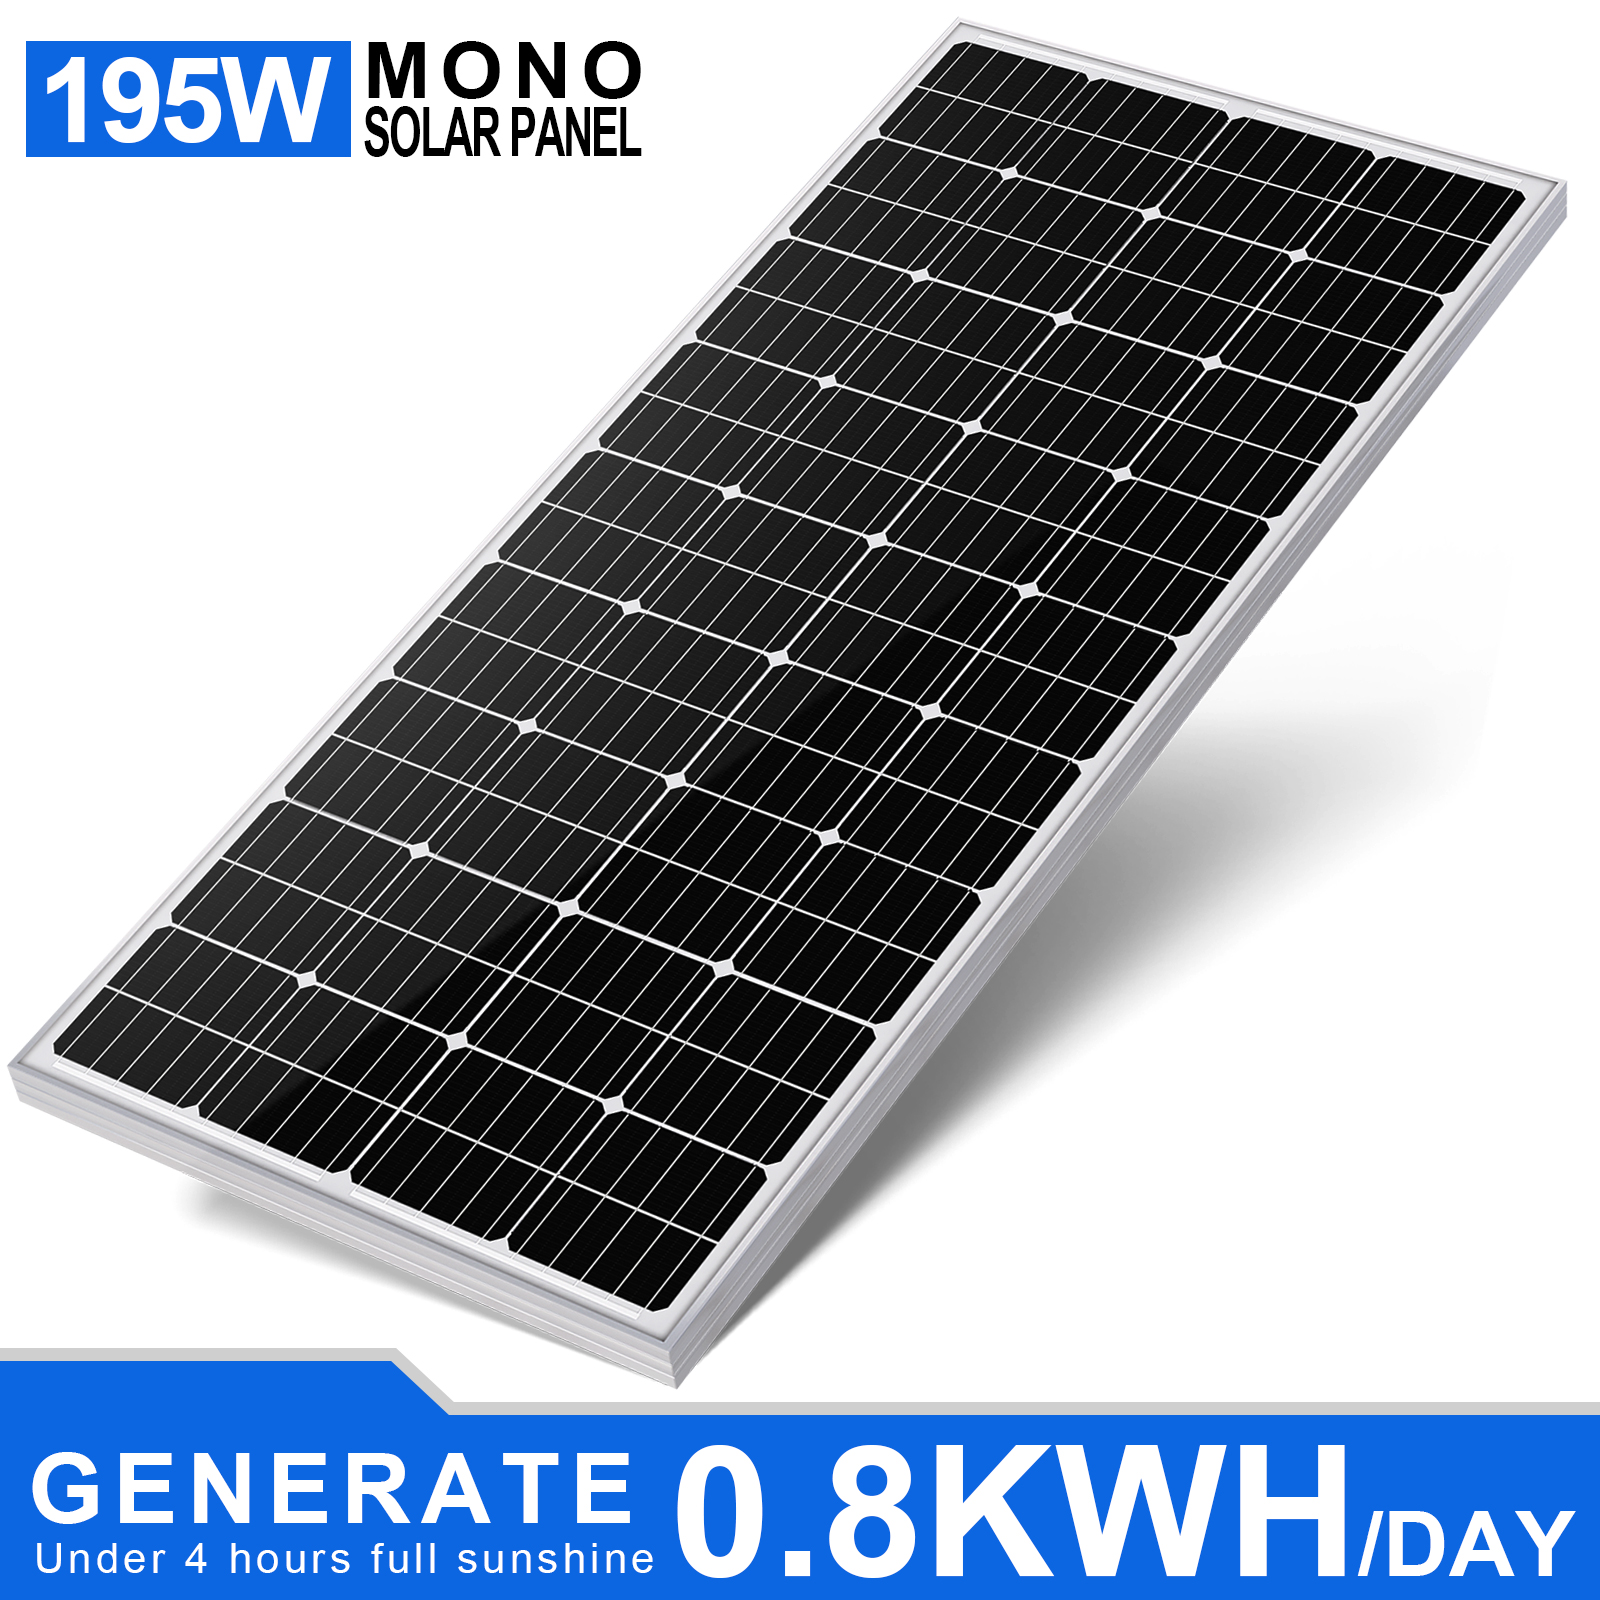 12-Volt-monokristallines Solarmodul für netzunabhängige Nutzung